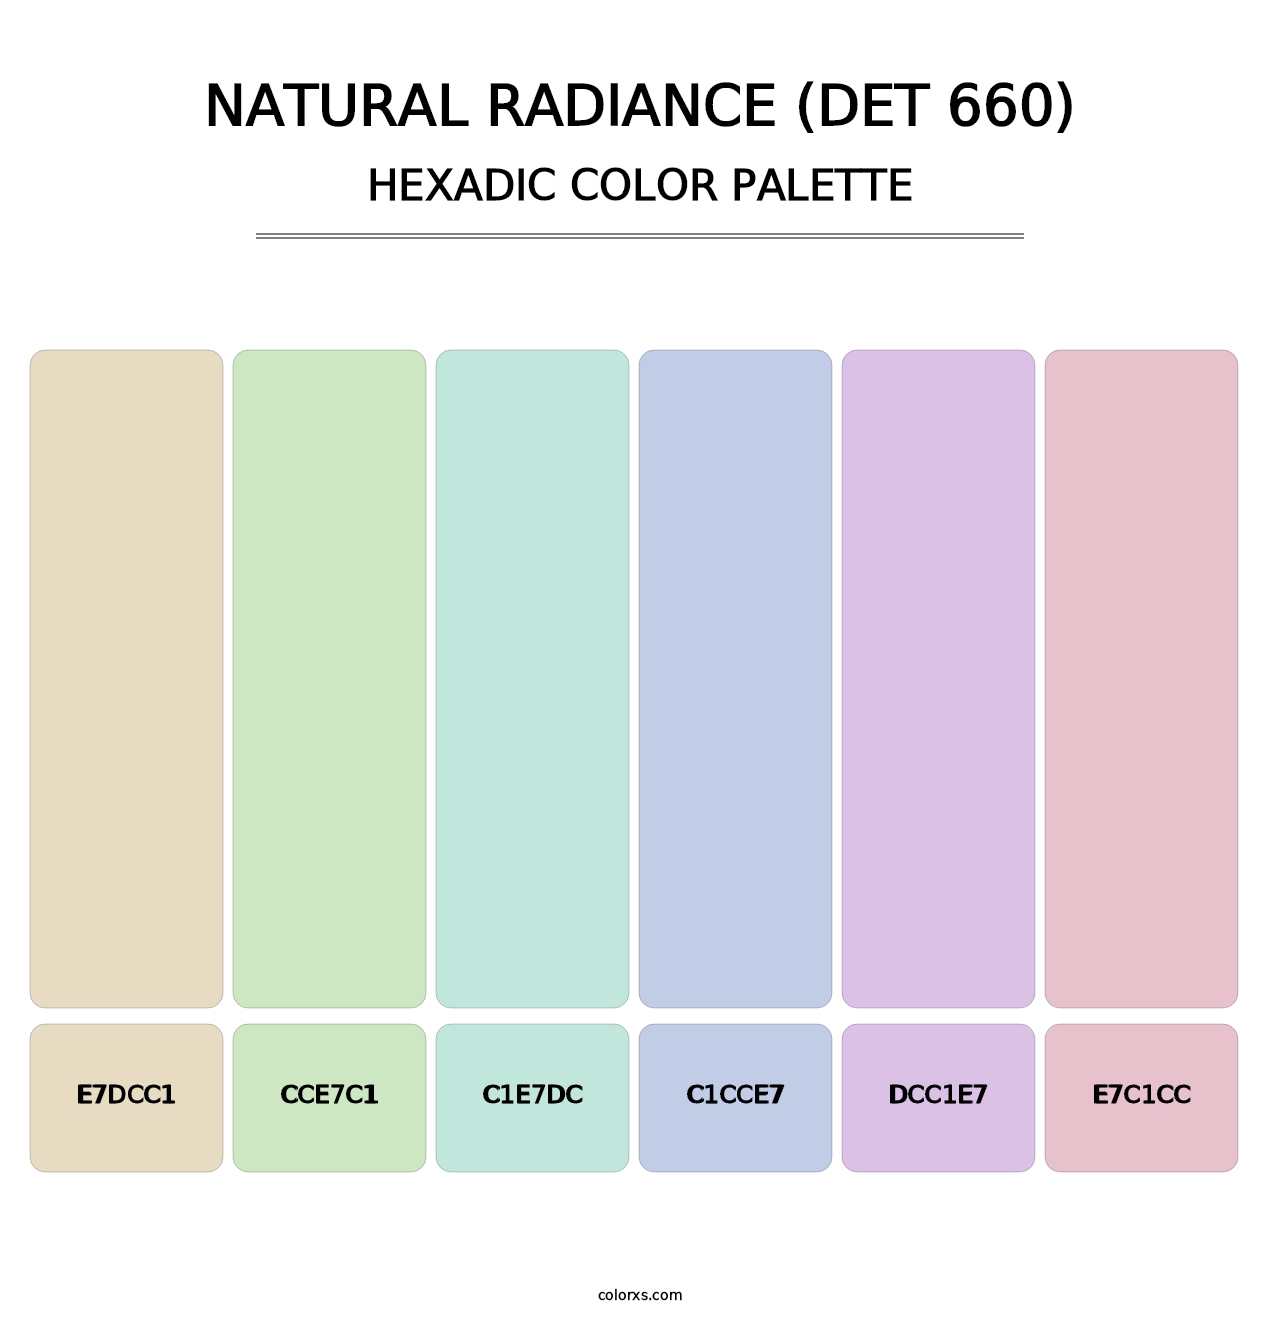 Natural Radiance (DET 660) - Hexadic Color Palette